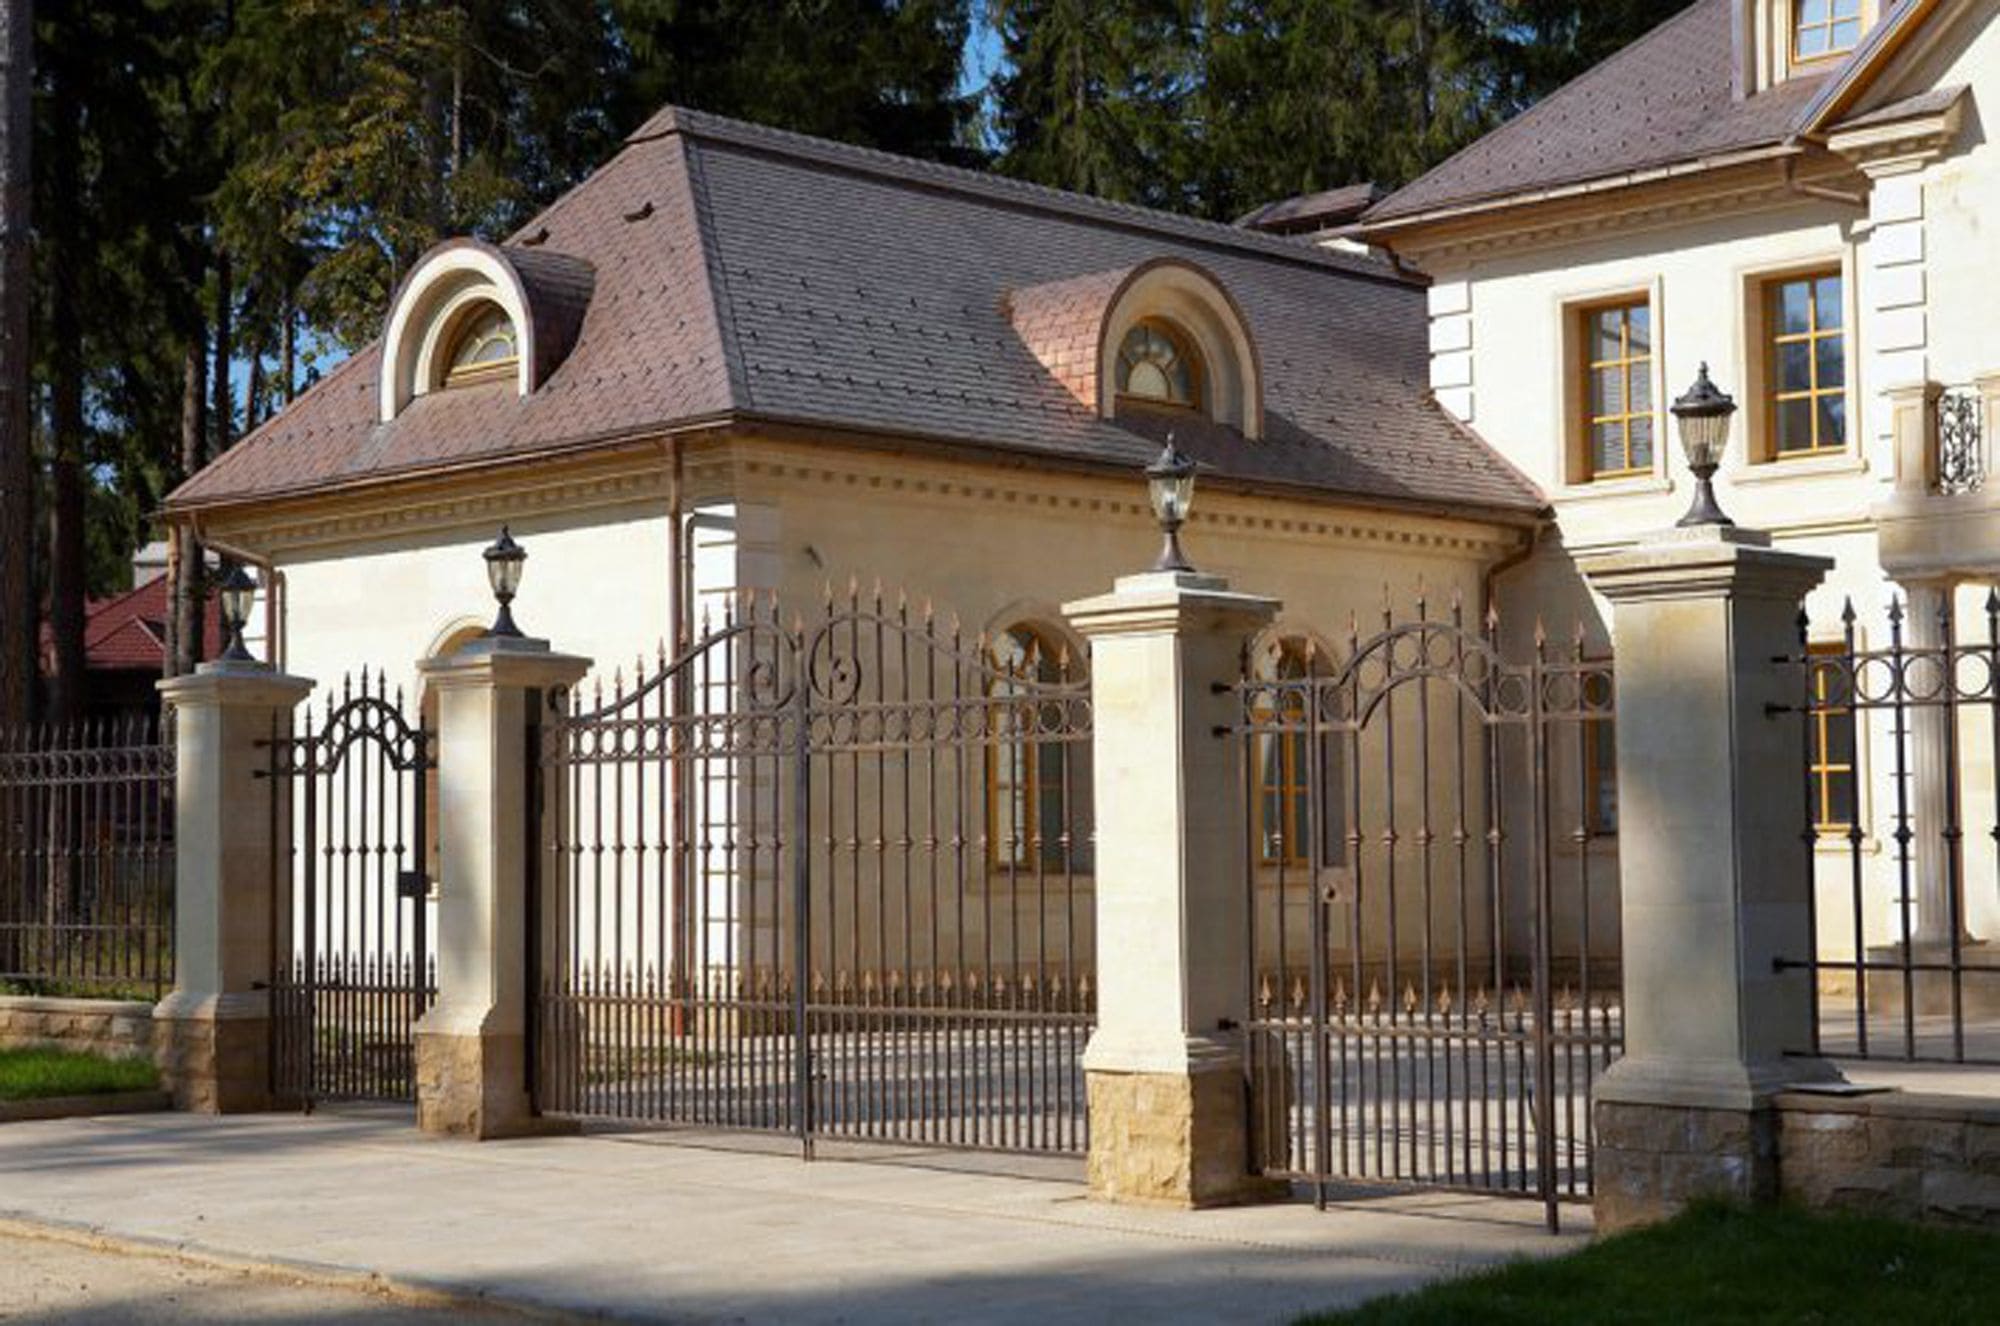 Загородные ворота. Усадьба, поместье, особняк в стиле классицизм. Кованый забор в английском стиле. Забор в англискомс тие. Забор в классическом стиле.